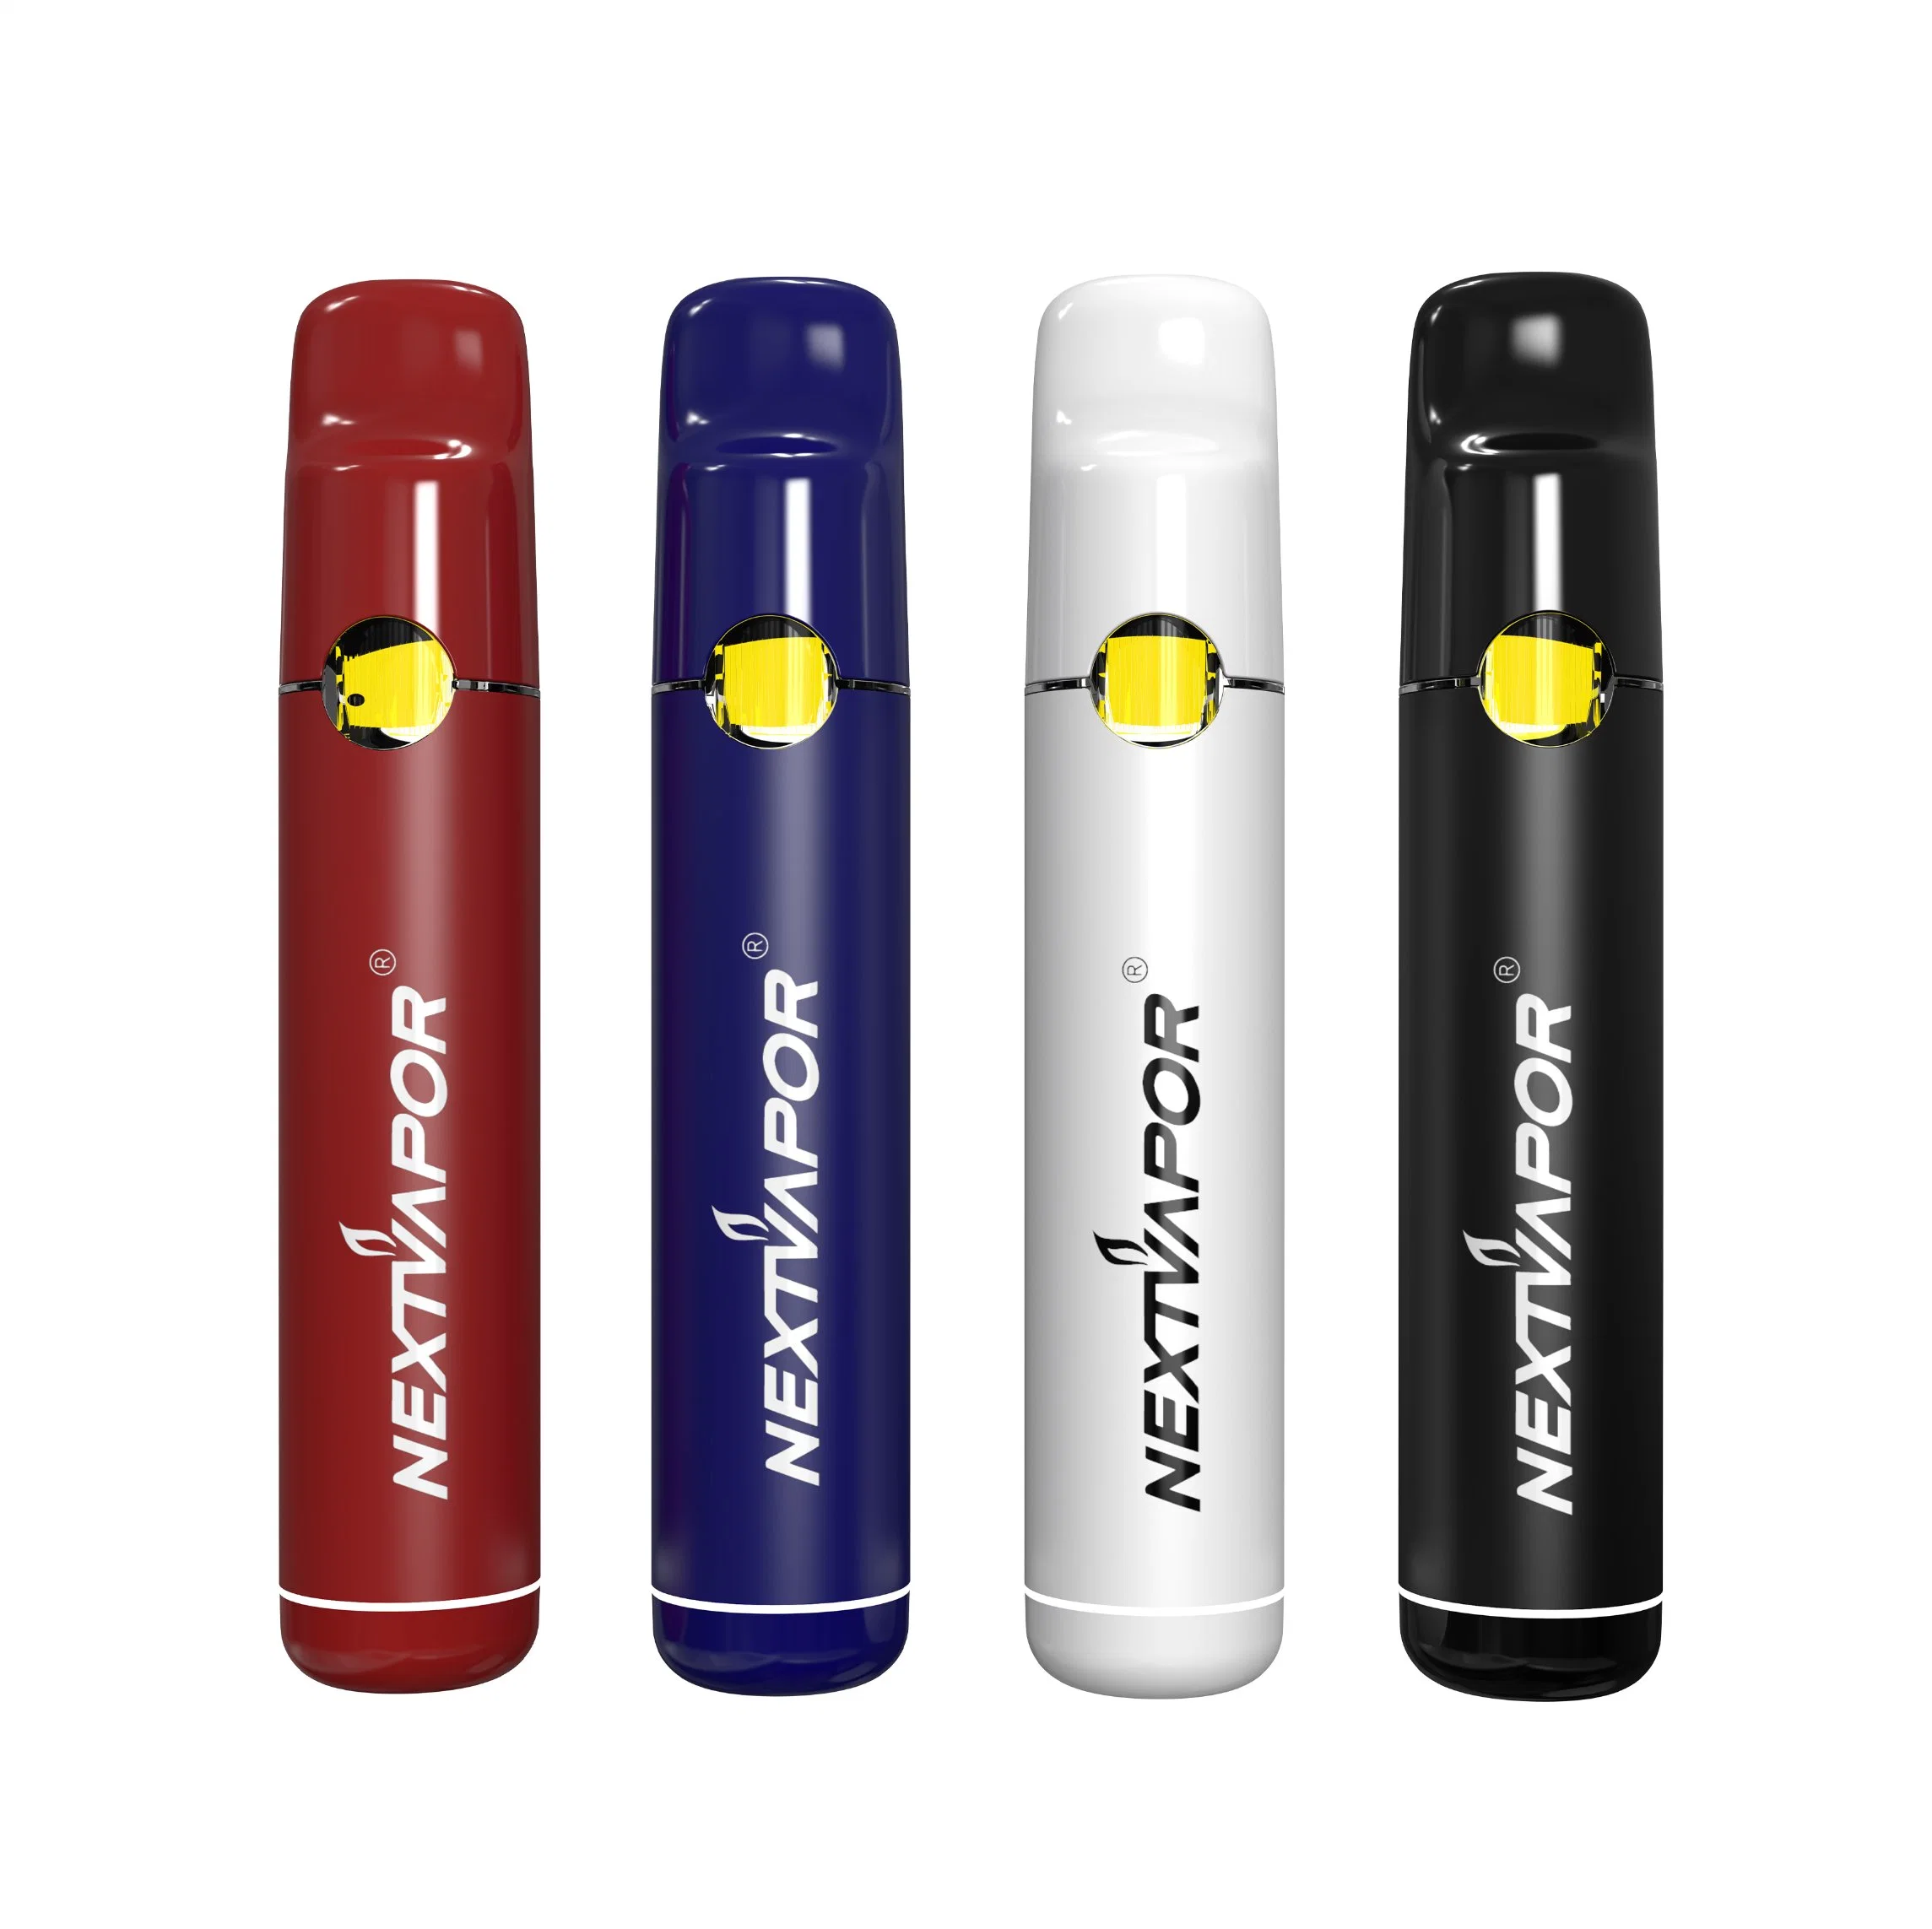 آخر تصميم جديد من نوع Nextaparest منخفض الحرارة مفترسات قلم سجائر إلكتروني المجموعات